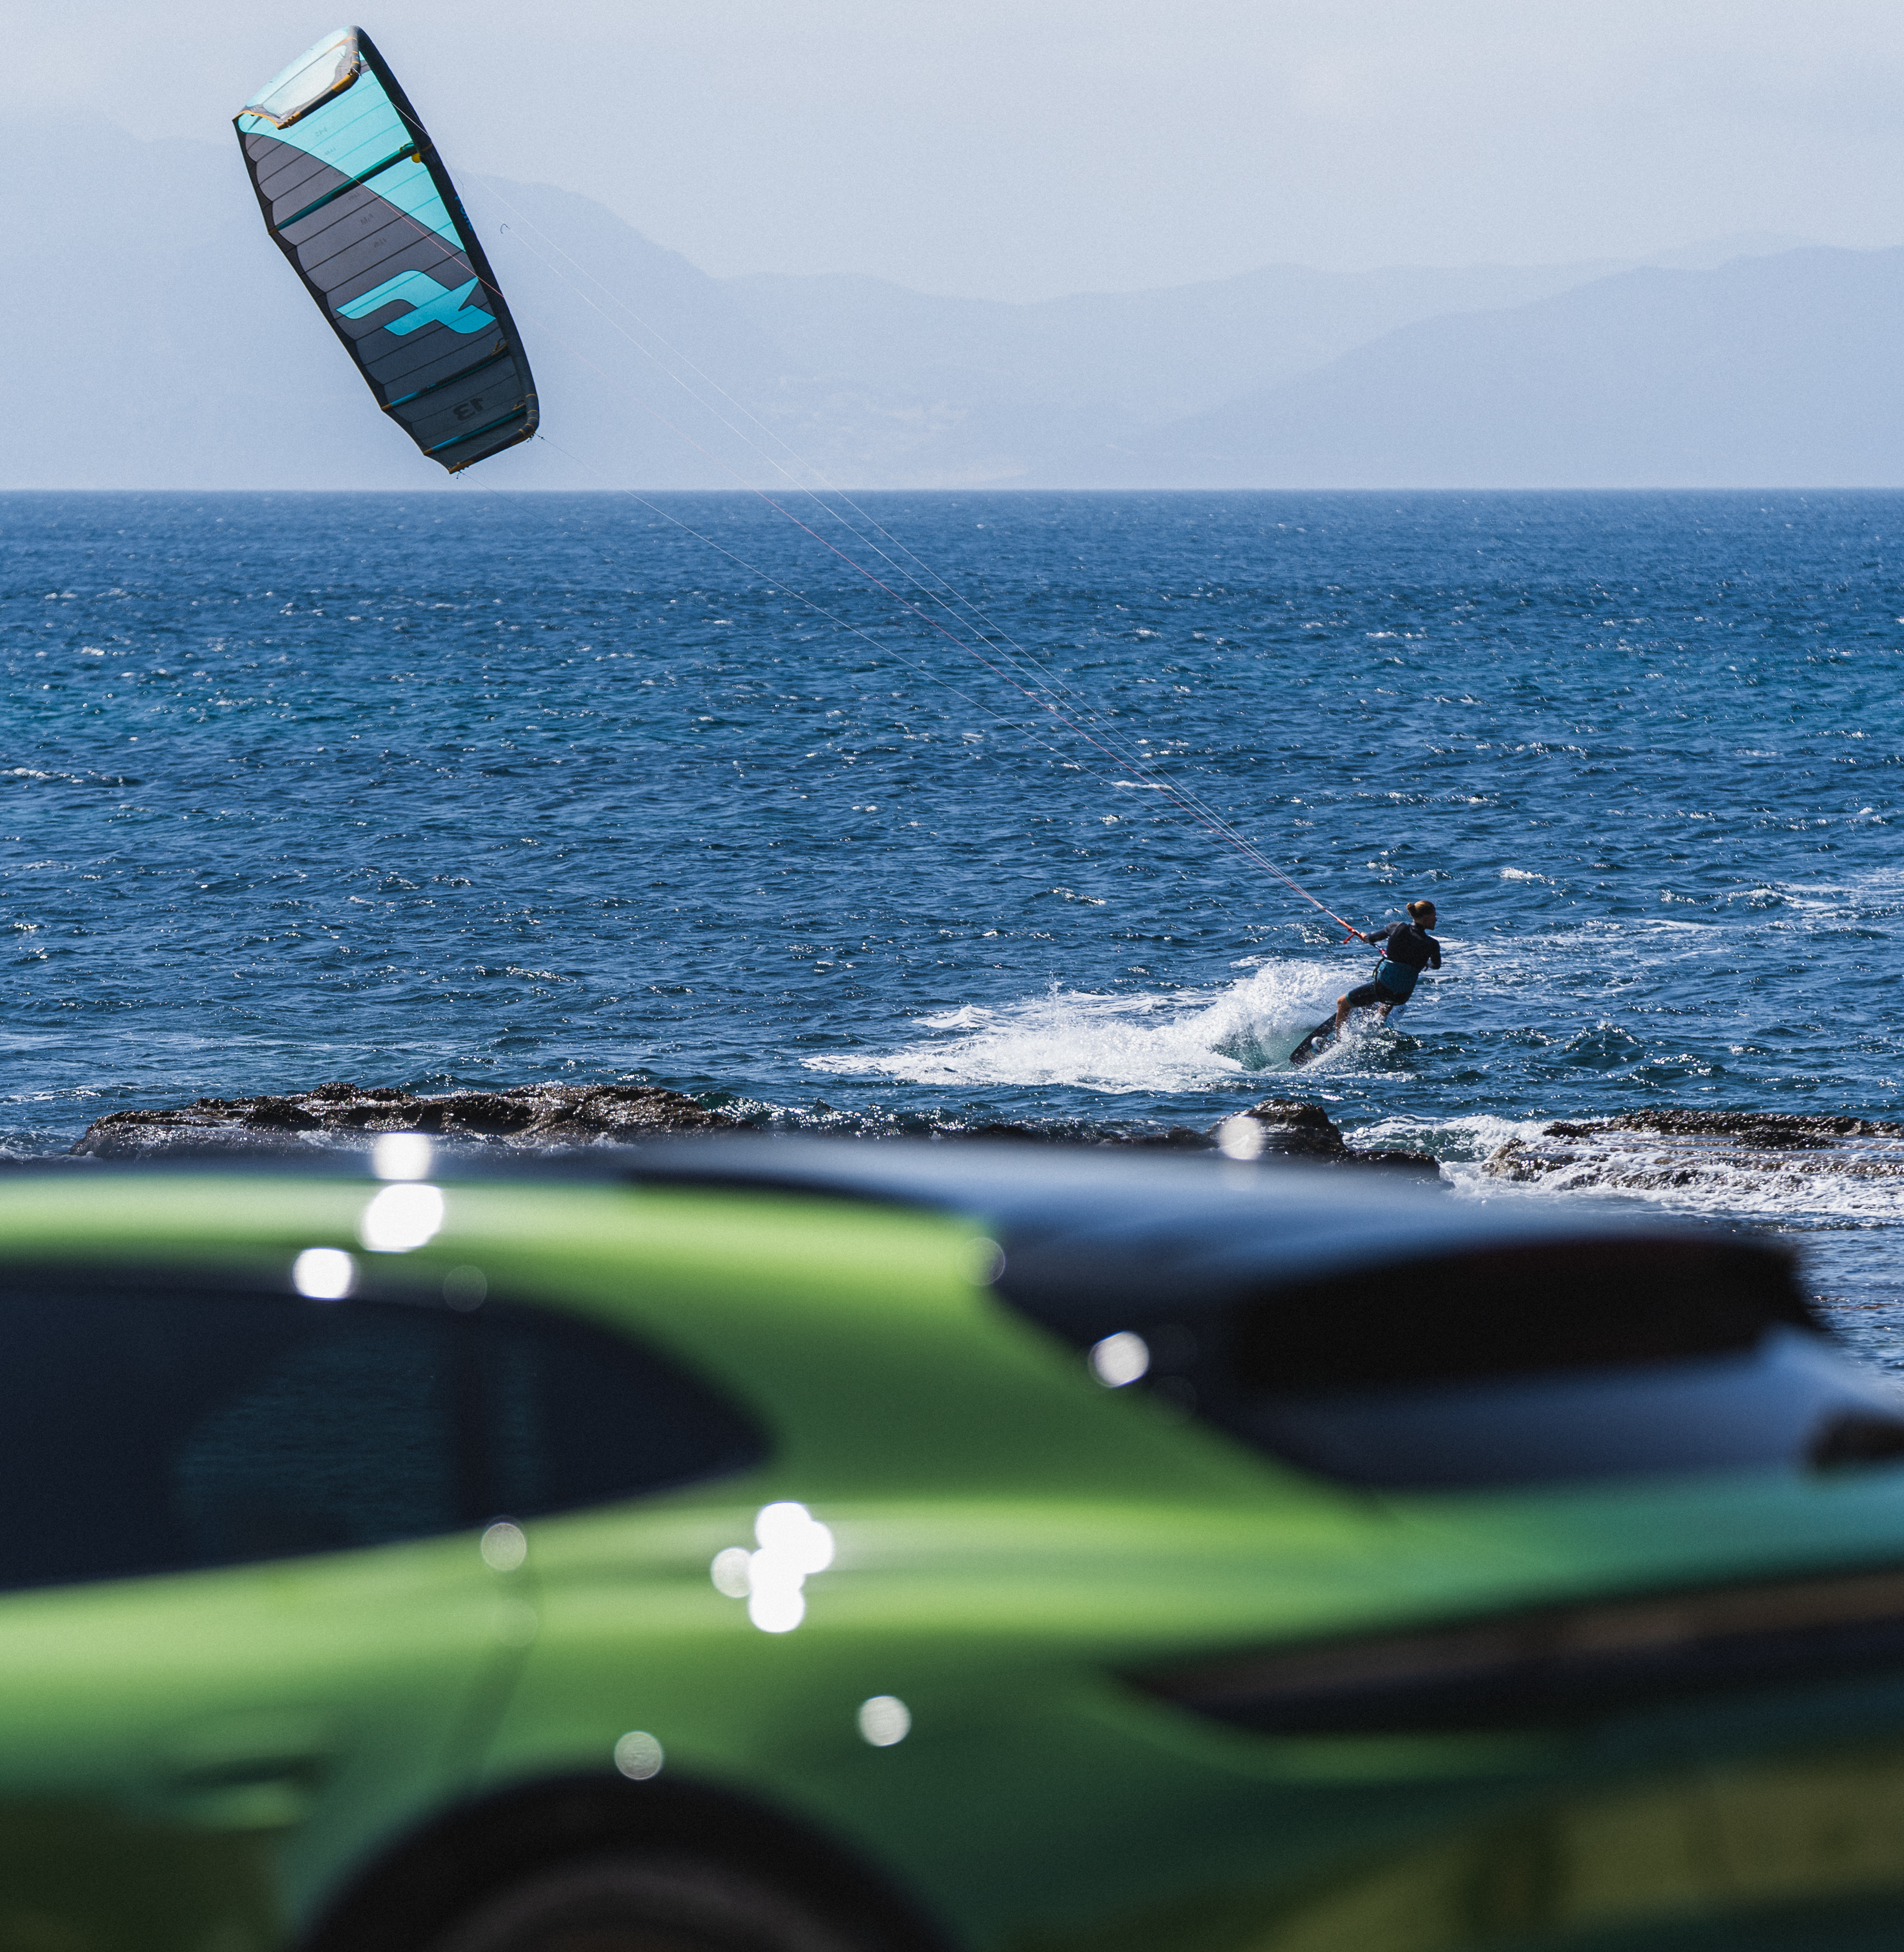 Kitesurfer riding waves, green Porsche in foreground